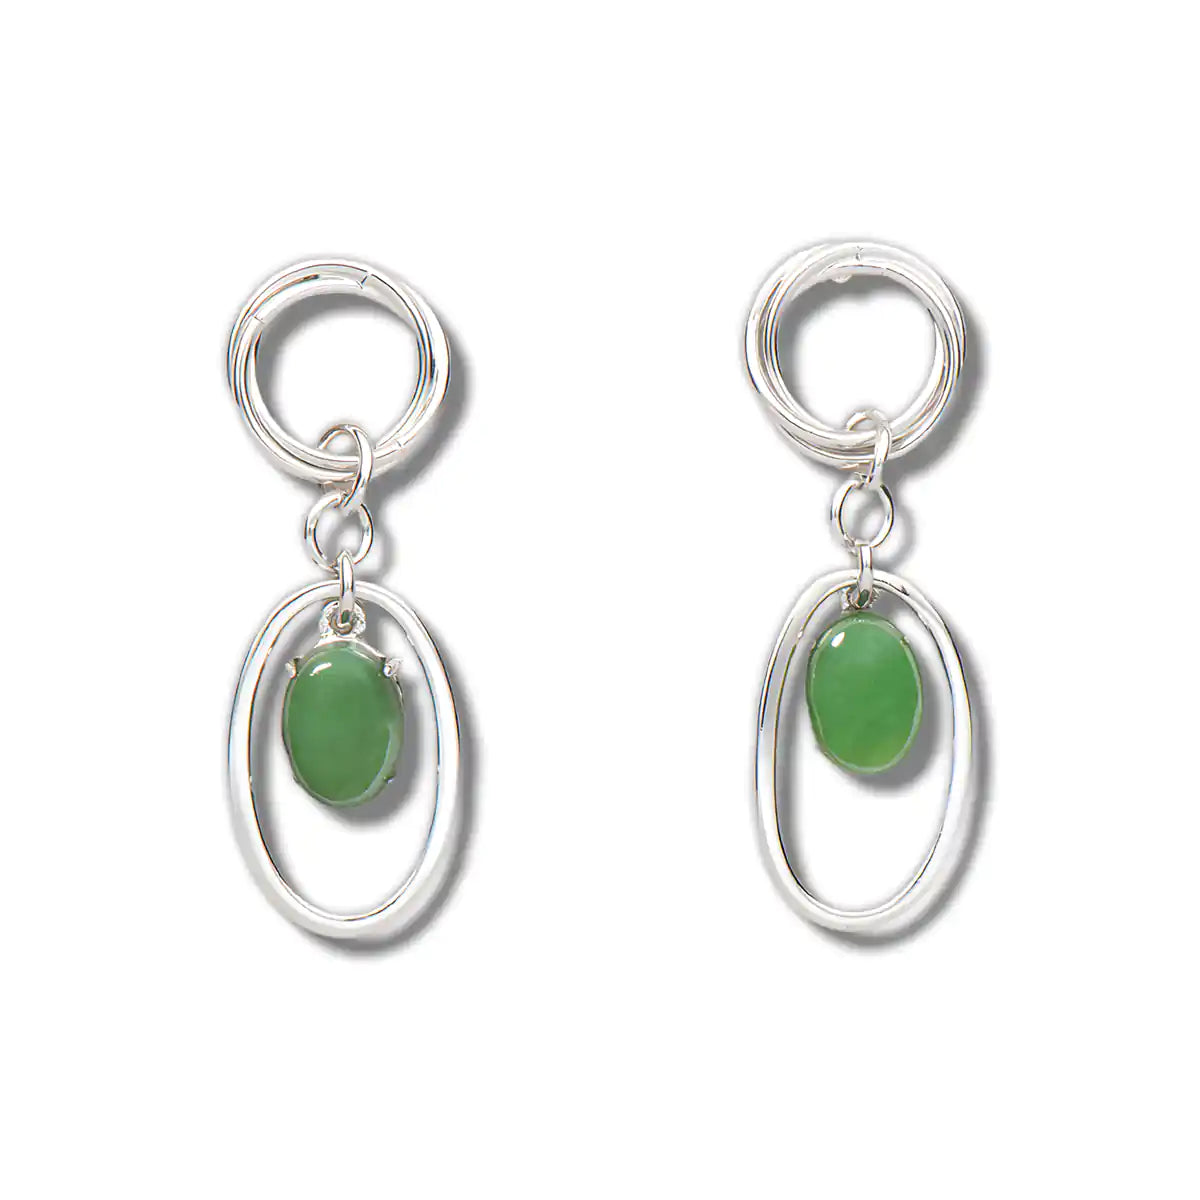 Jade woven rings earrings